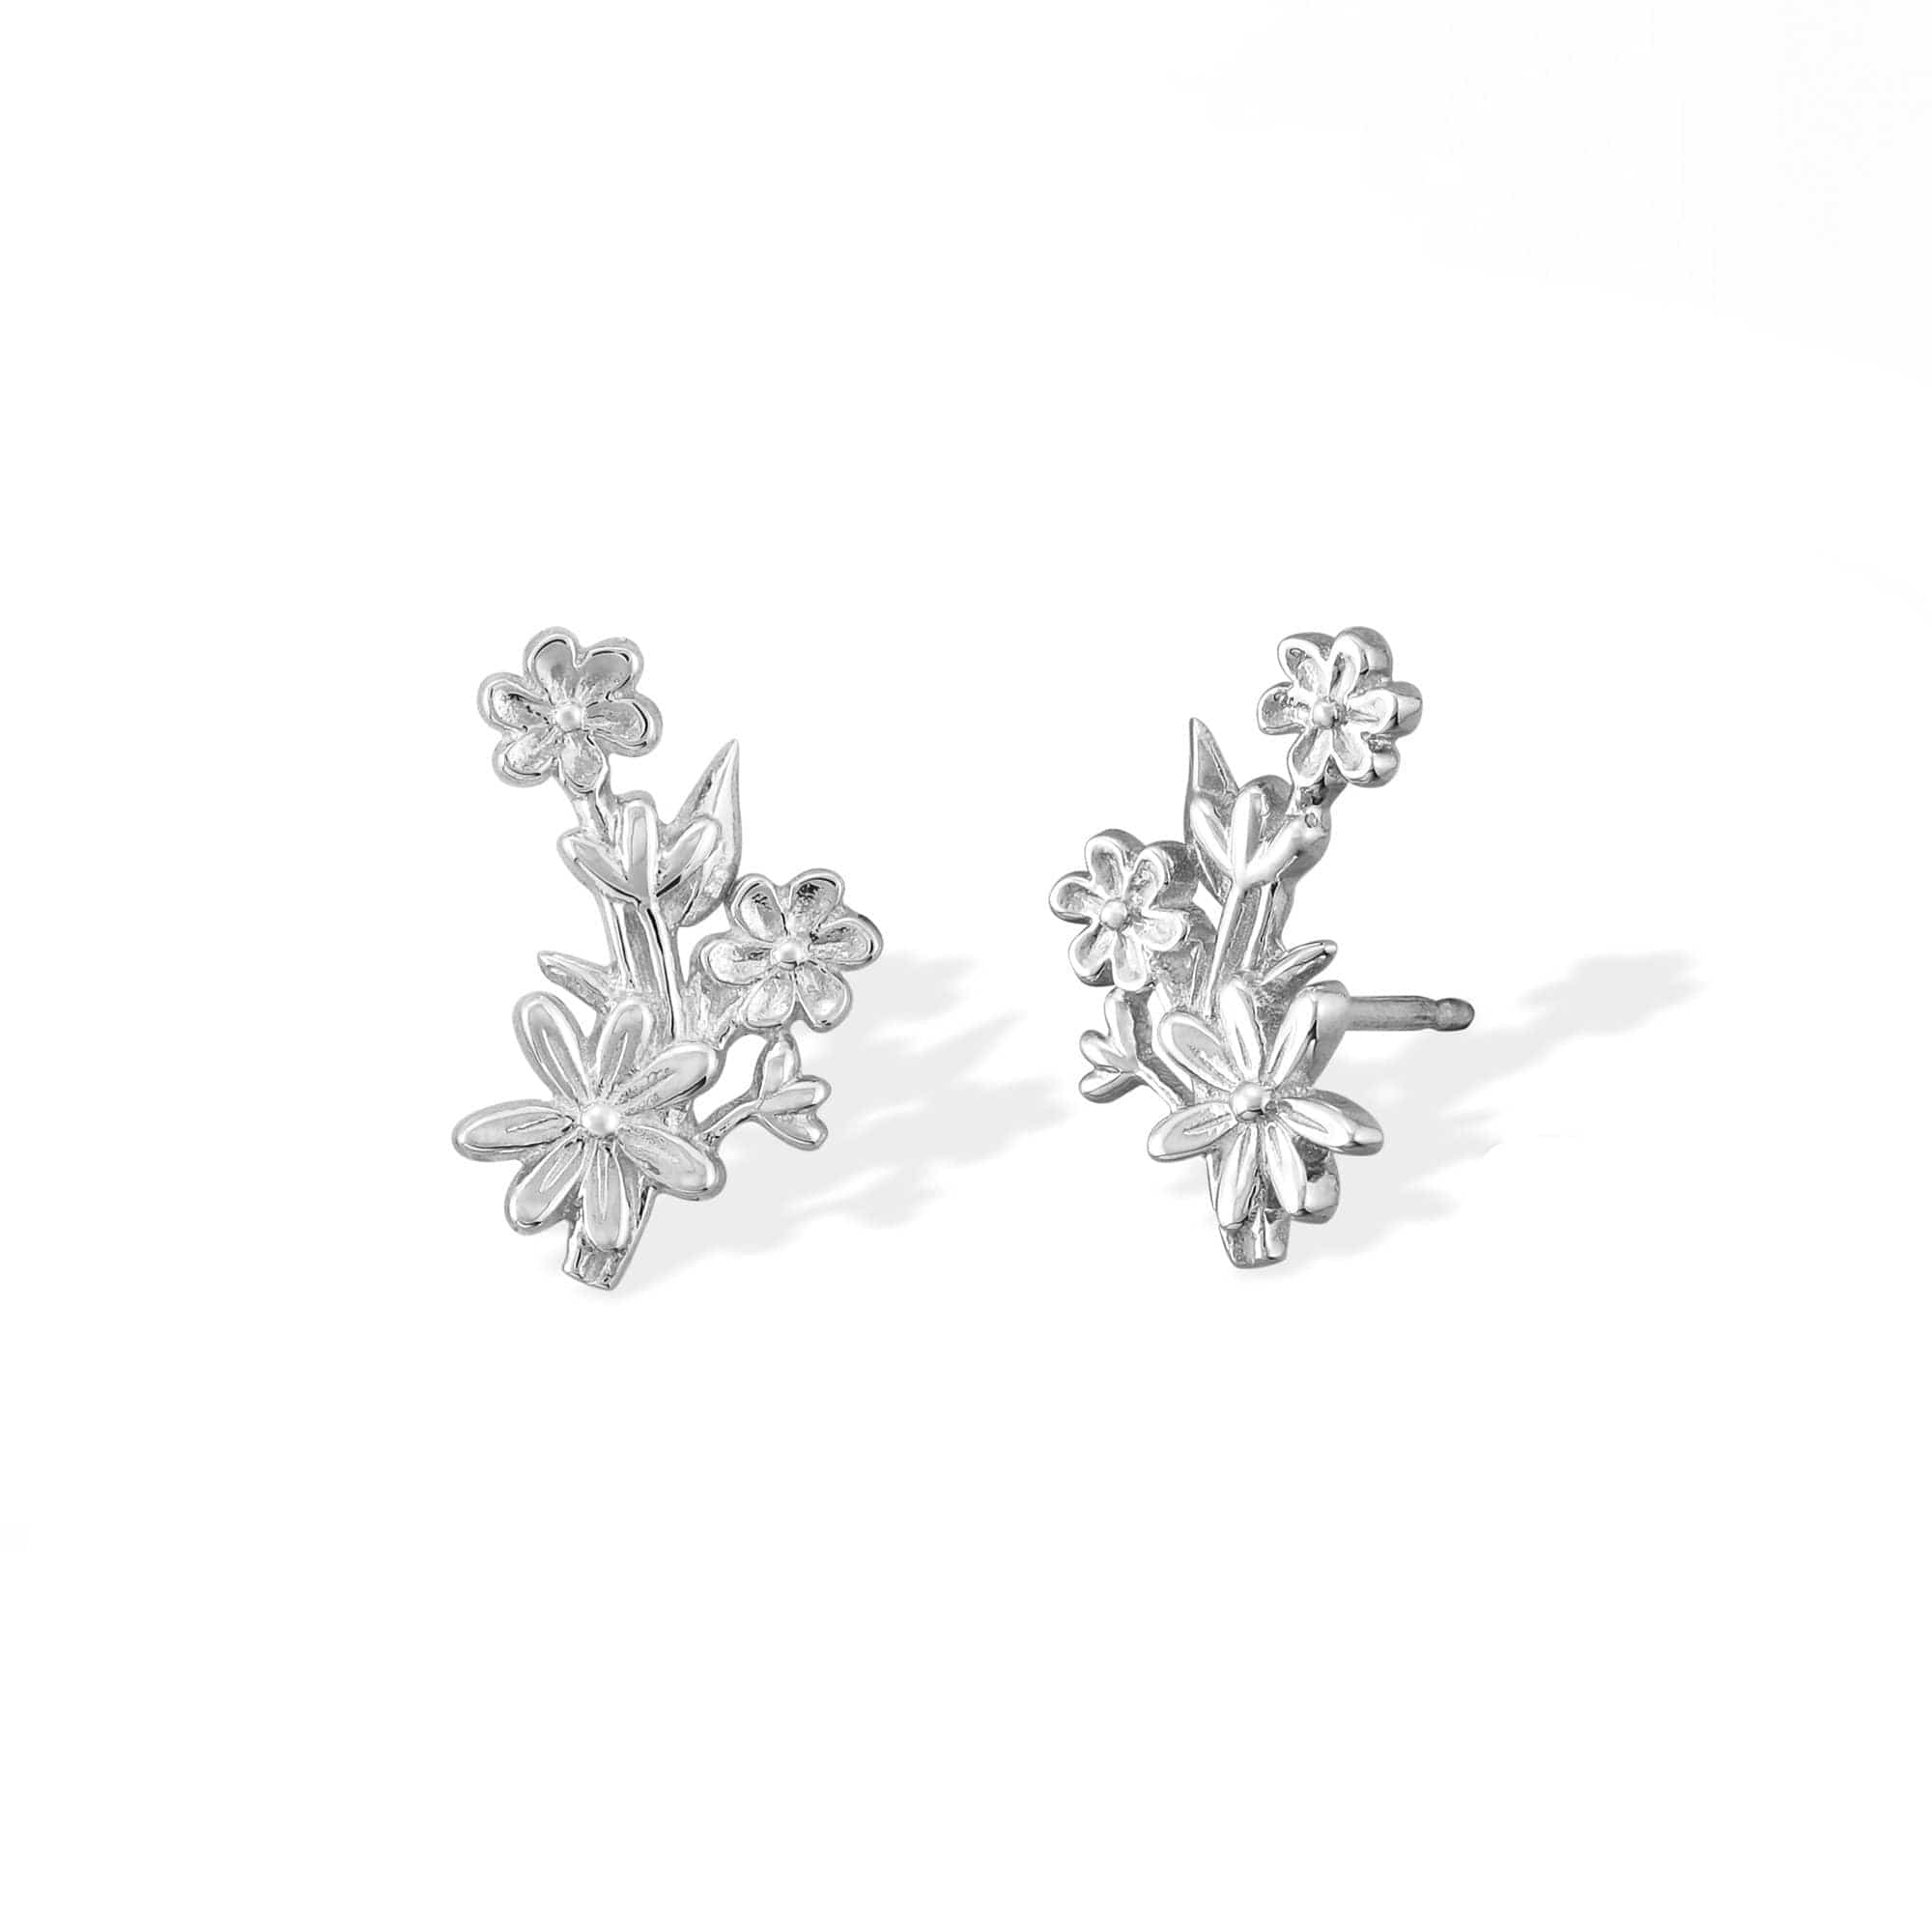 Boma Jewelry Earrings Flower Bouquet Stud Earrings